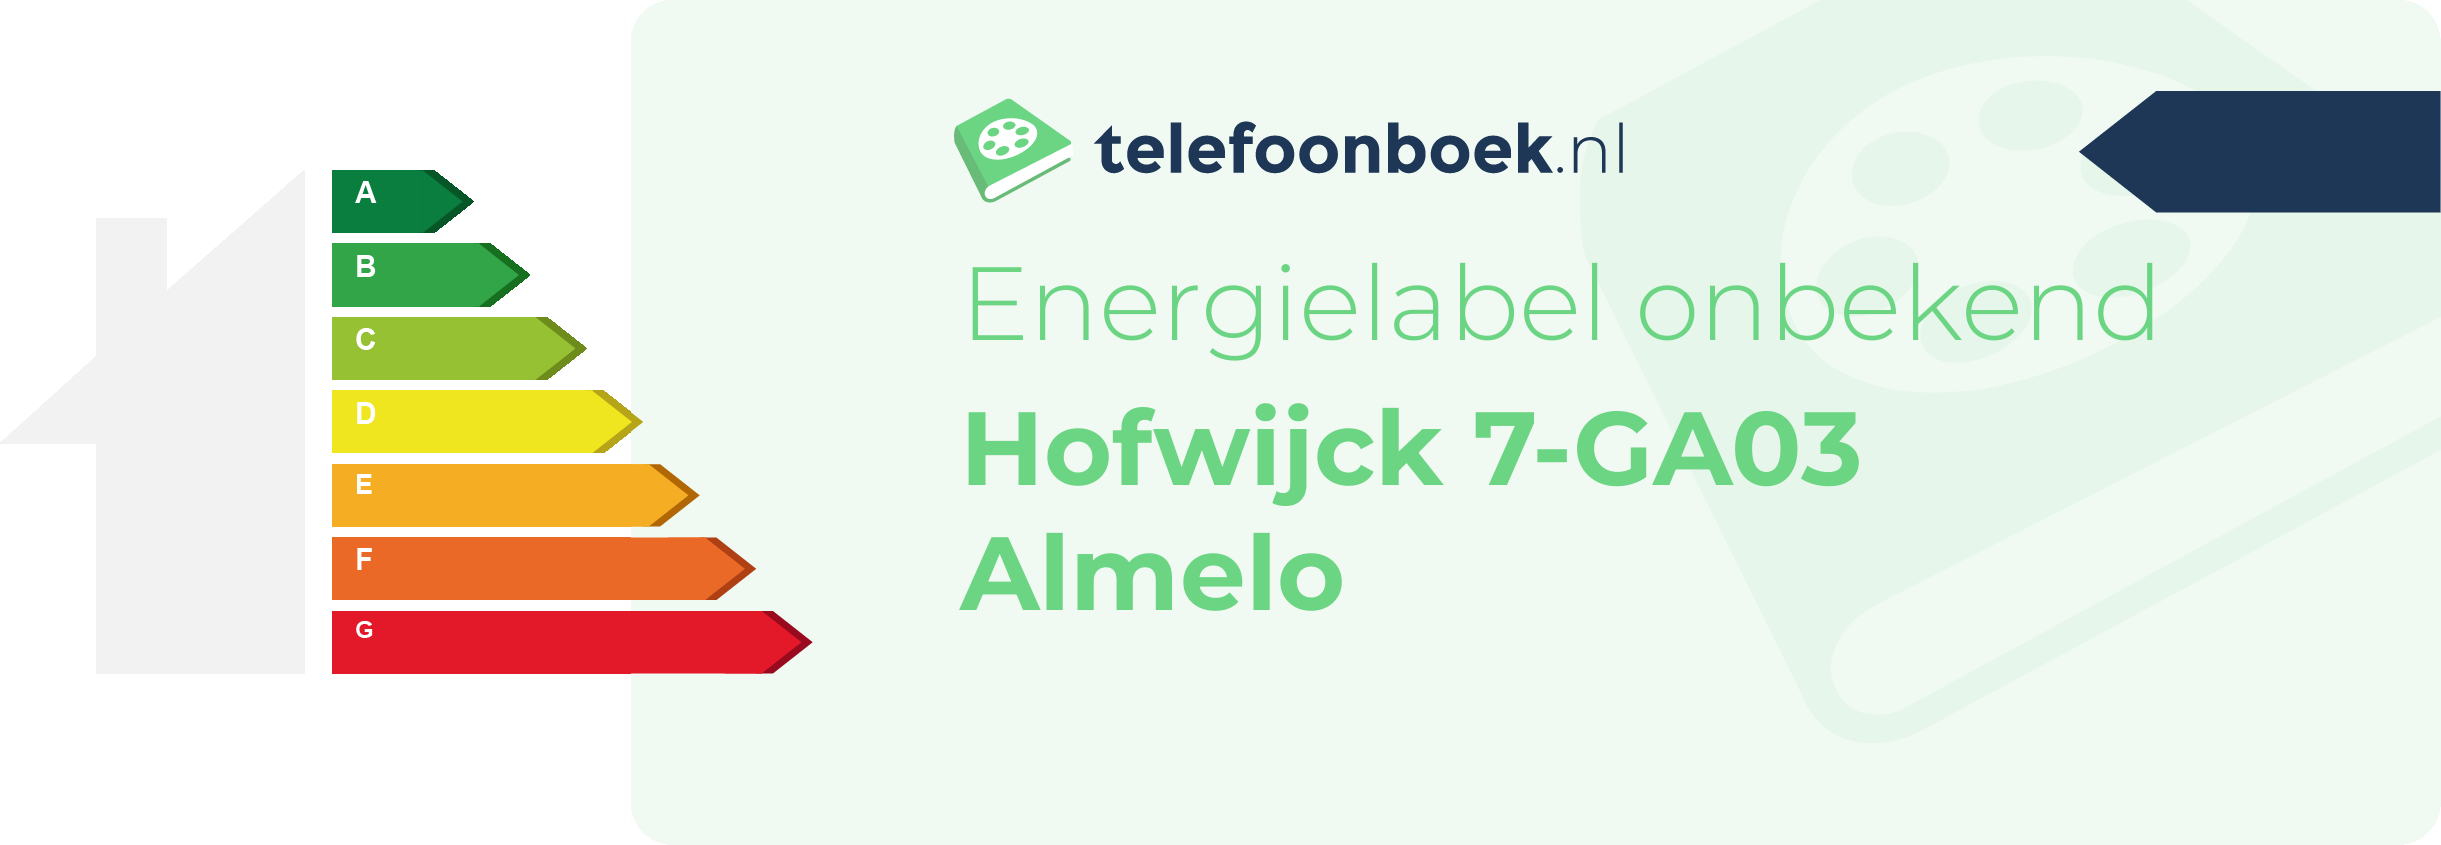 Energielabel Hofwijck 7-GA03 Almelo